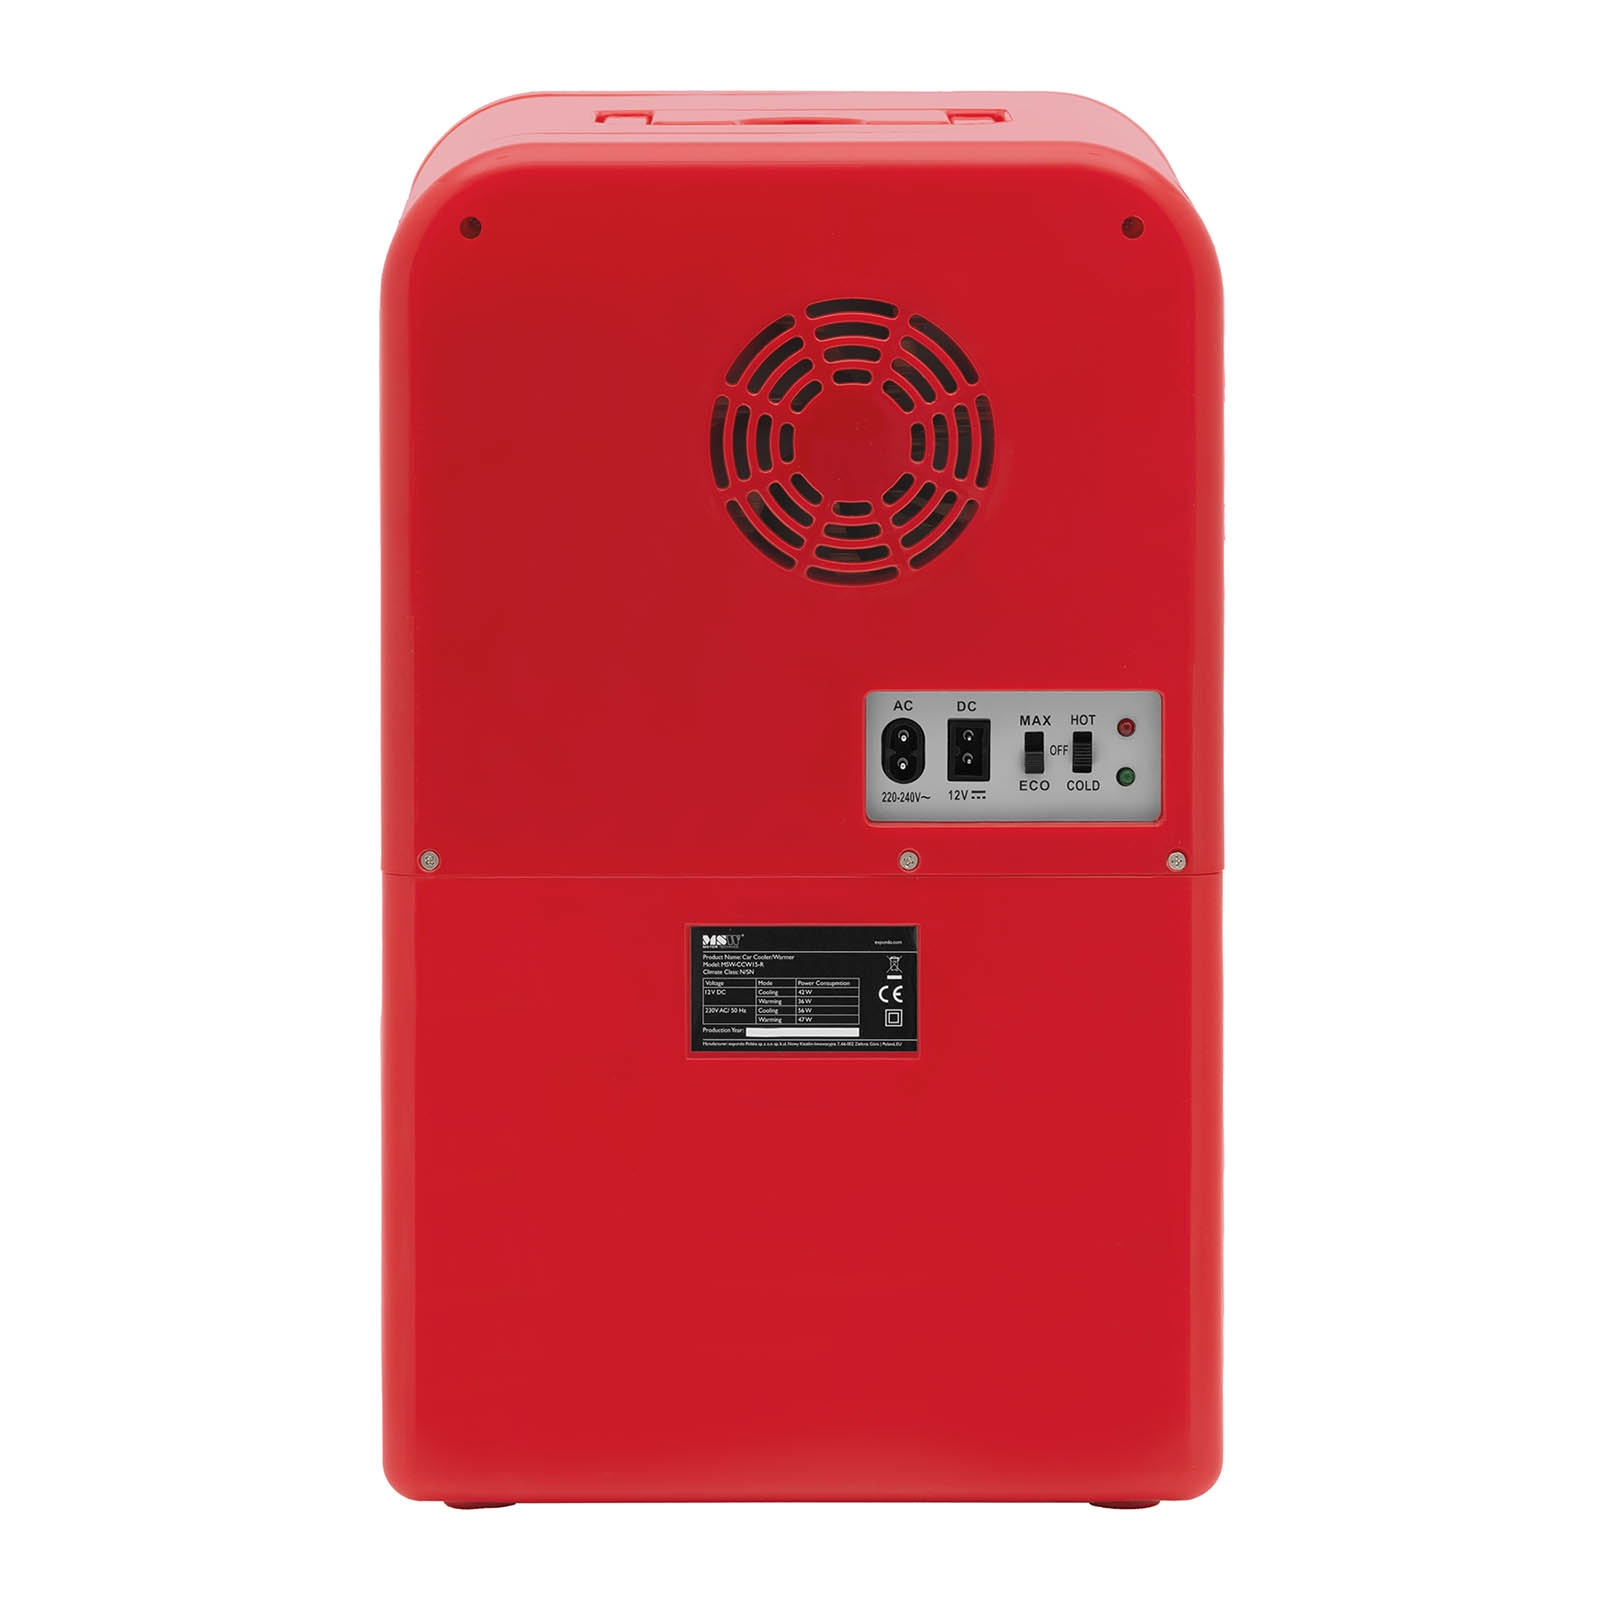 Mini chladnička 12 V / 230 V - zařízení 2 v 1 s funkcí ohřevu - 15 l - červená